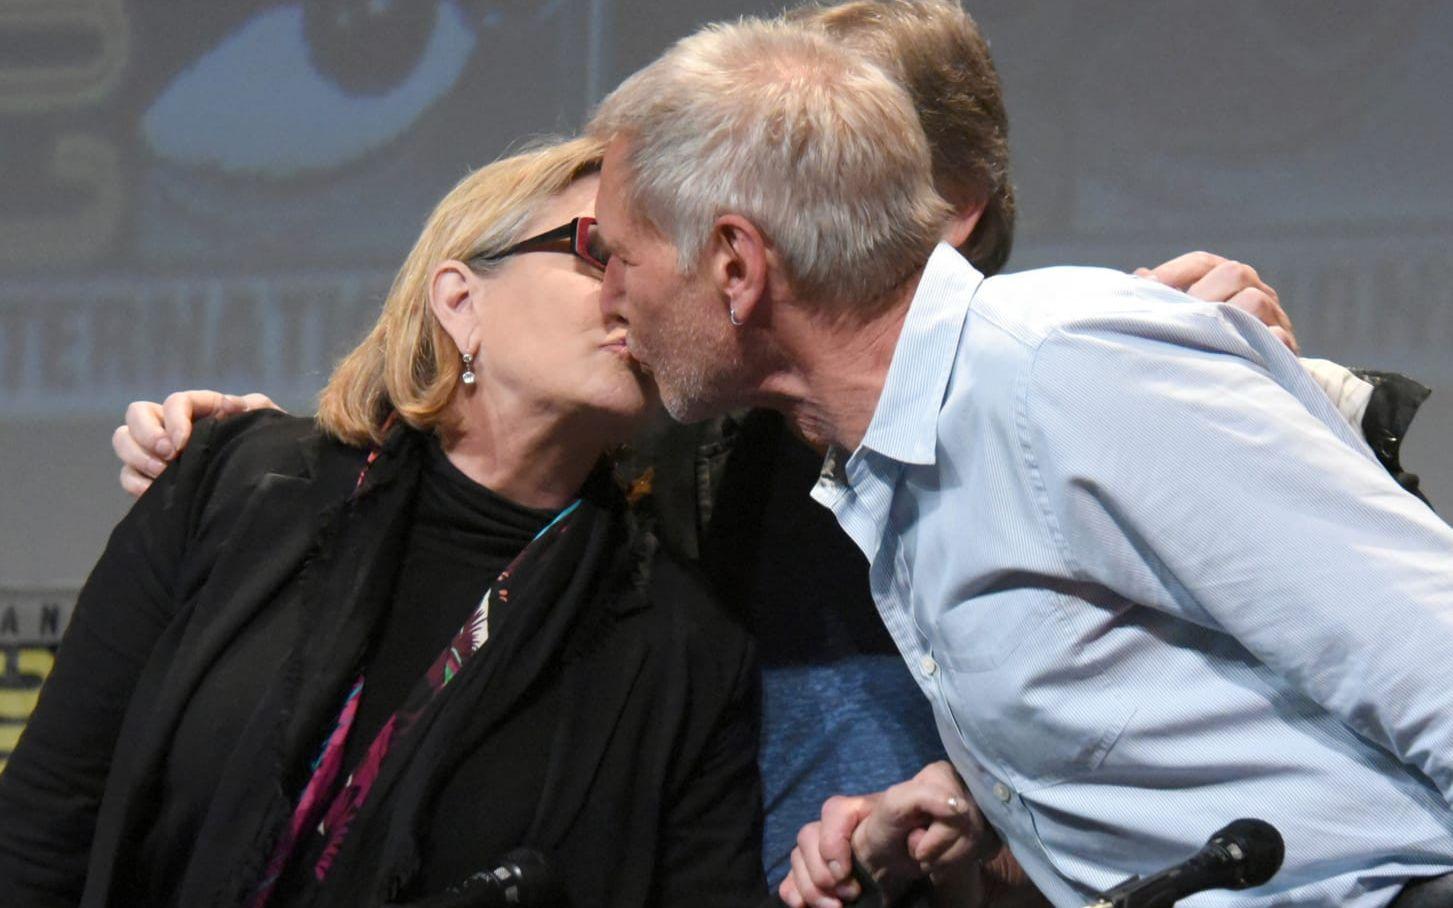 Carrie Fisher och Harrison Ford på konventet Comic Con 2015. I sin nyutkomna biografi "The Princess Diarist" berättade hon att de två haft en romans under inspelningen av Star Wars-filmerna. Bild: TT